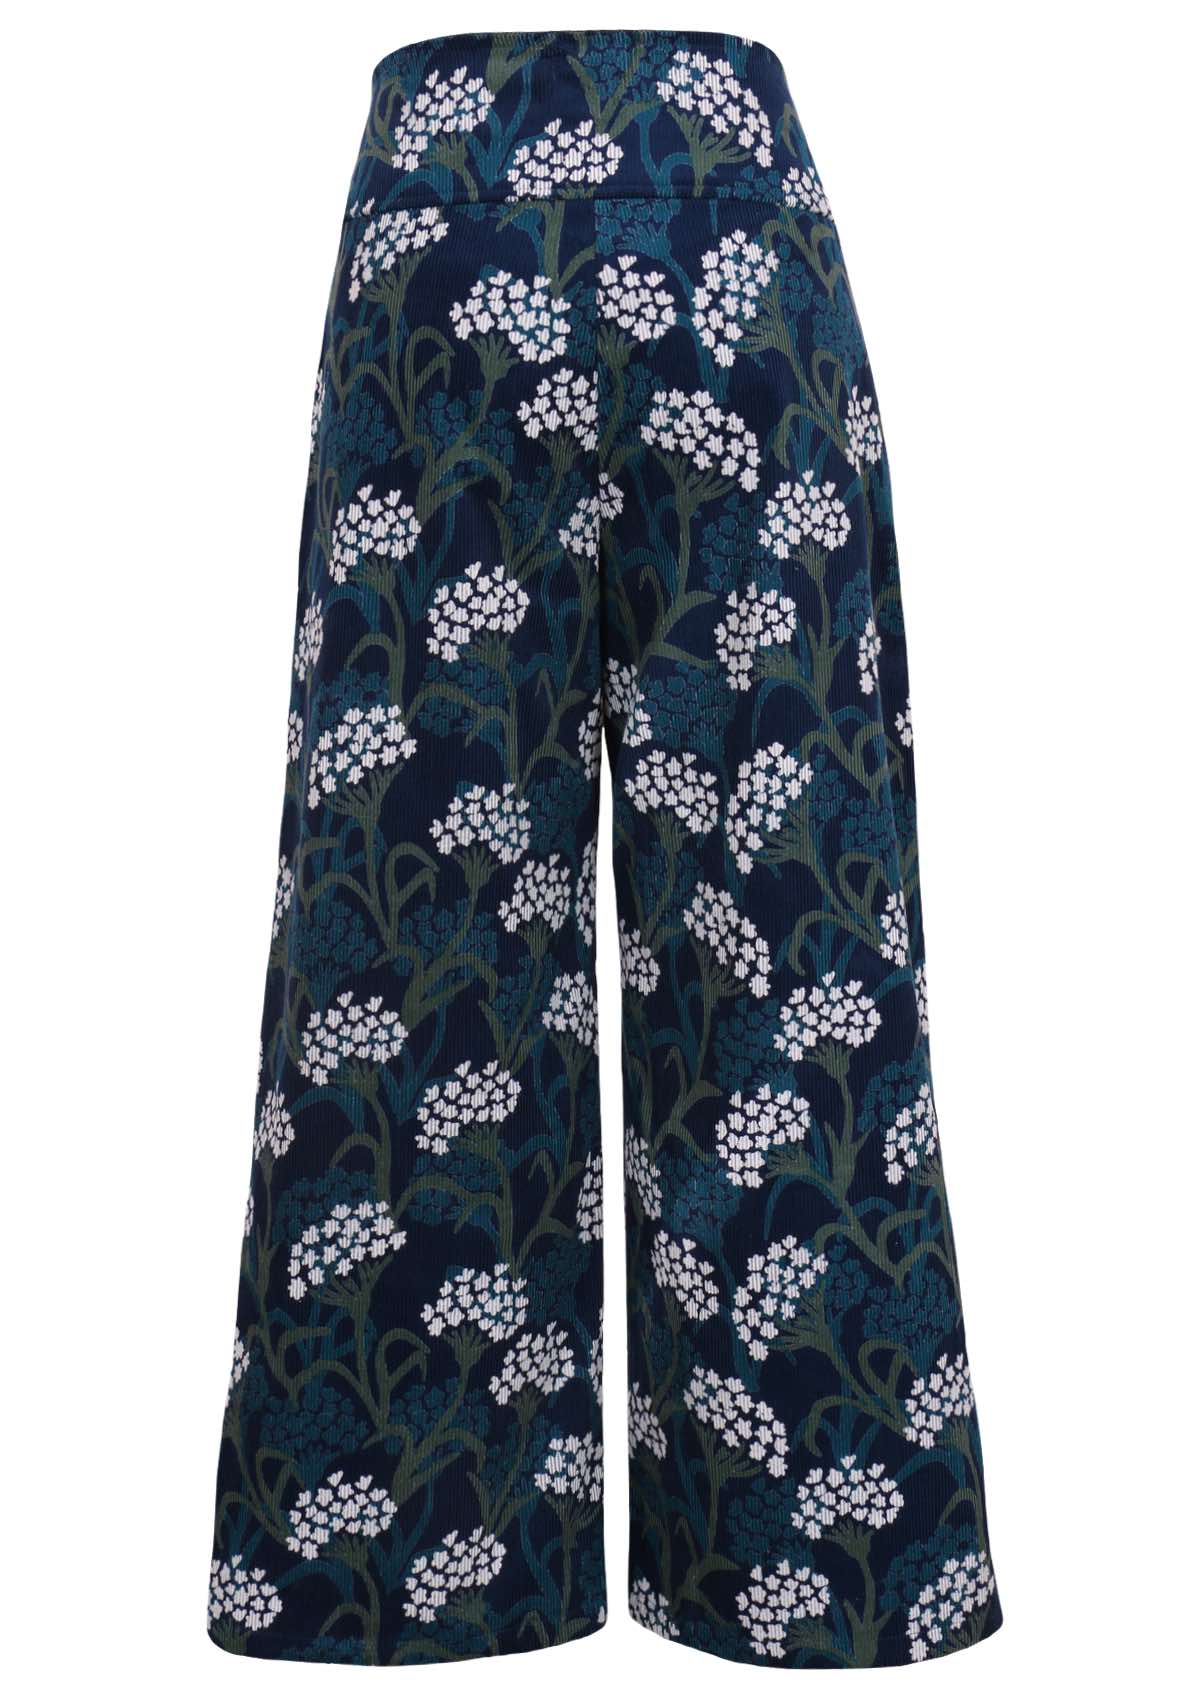 Floral print 100% cotton corduroy pants feature a wide leg. 